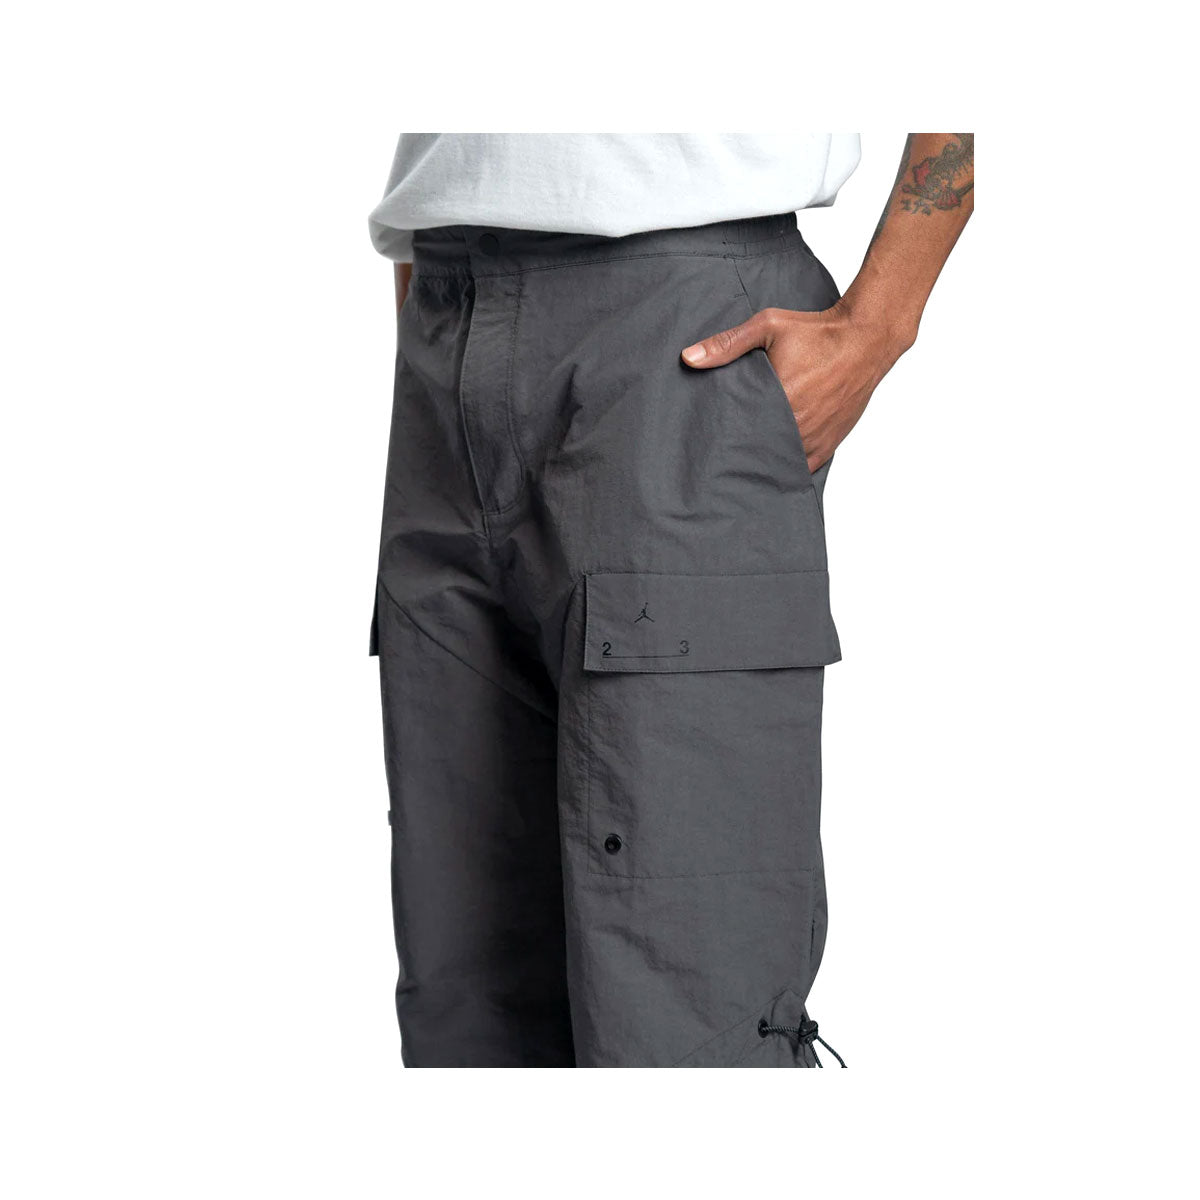 Air Jordan Men's 23 Engineered Woven Pants Dark Shadow